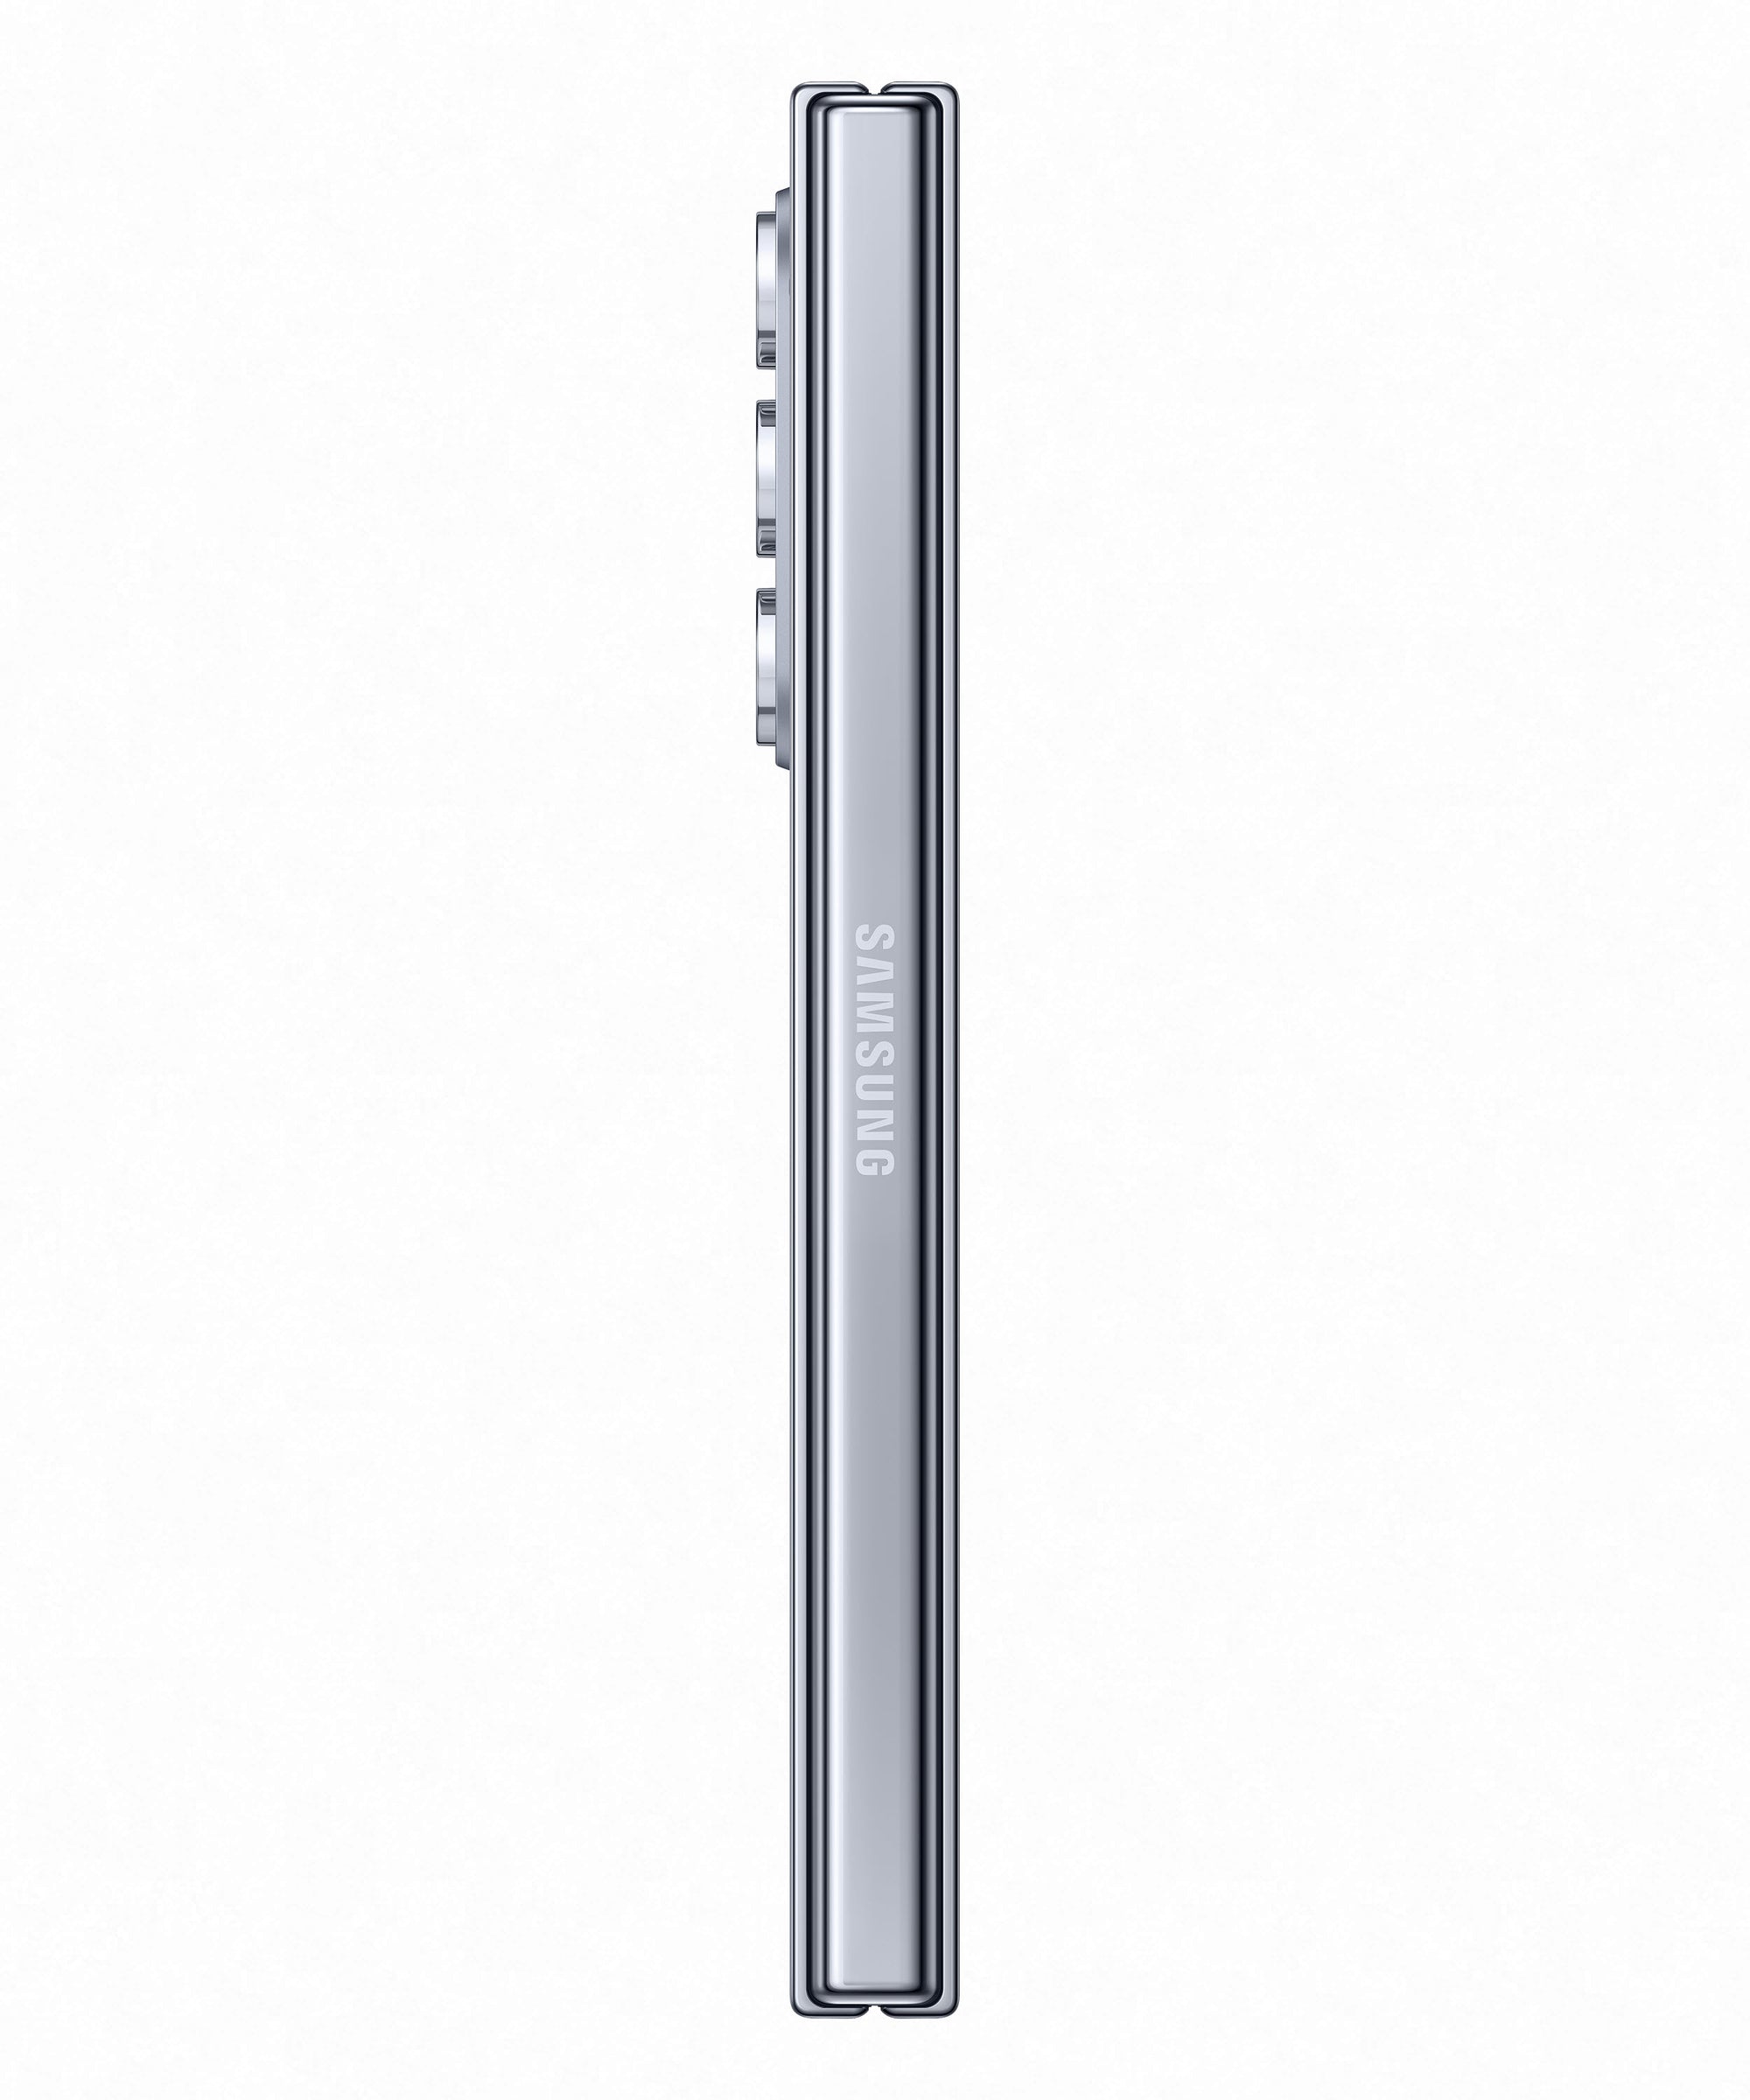 Samsung Galaxy SM-F946WLBE 7.6" 512GB Smartphone Icy Blue